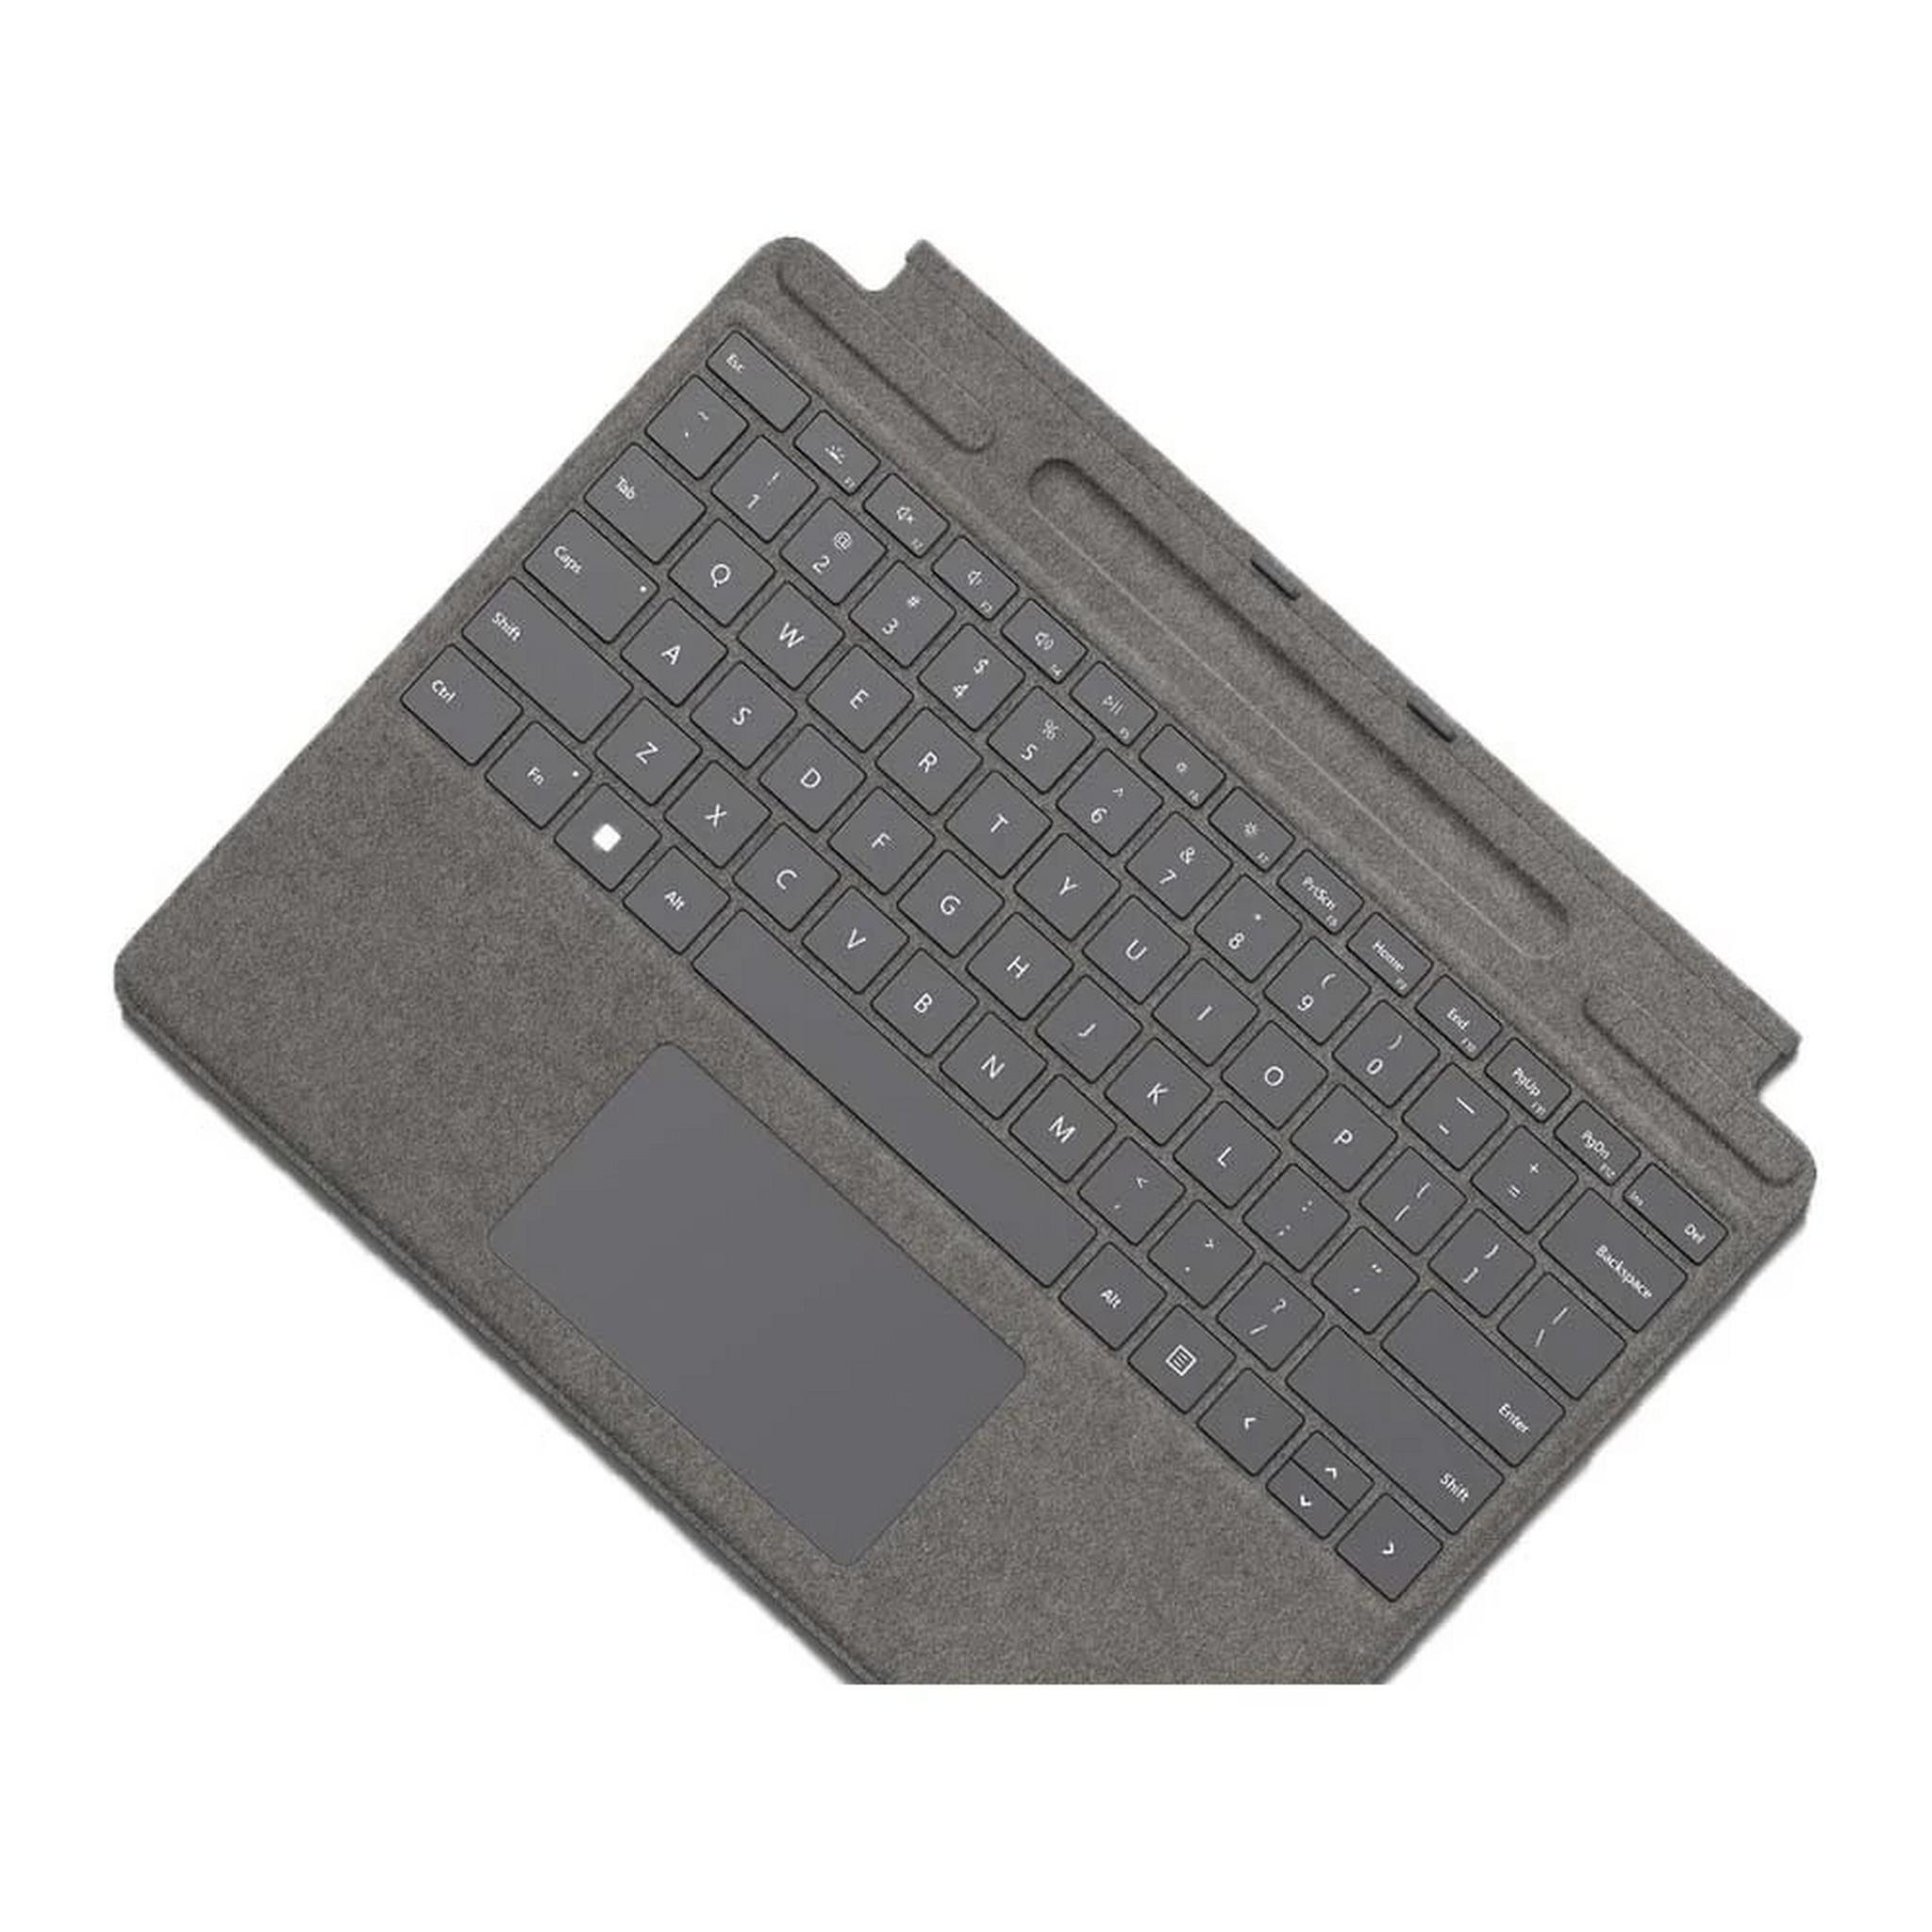 لوحة مفاتيح سيرفيس برو  مع قلم من مايكروسوفت - رمادي